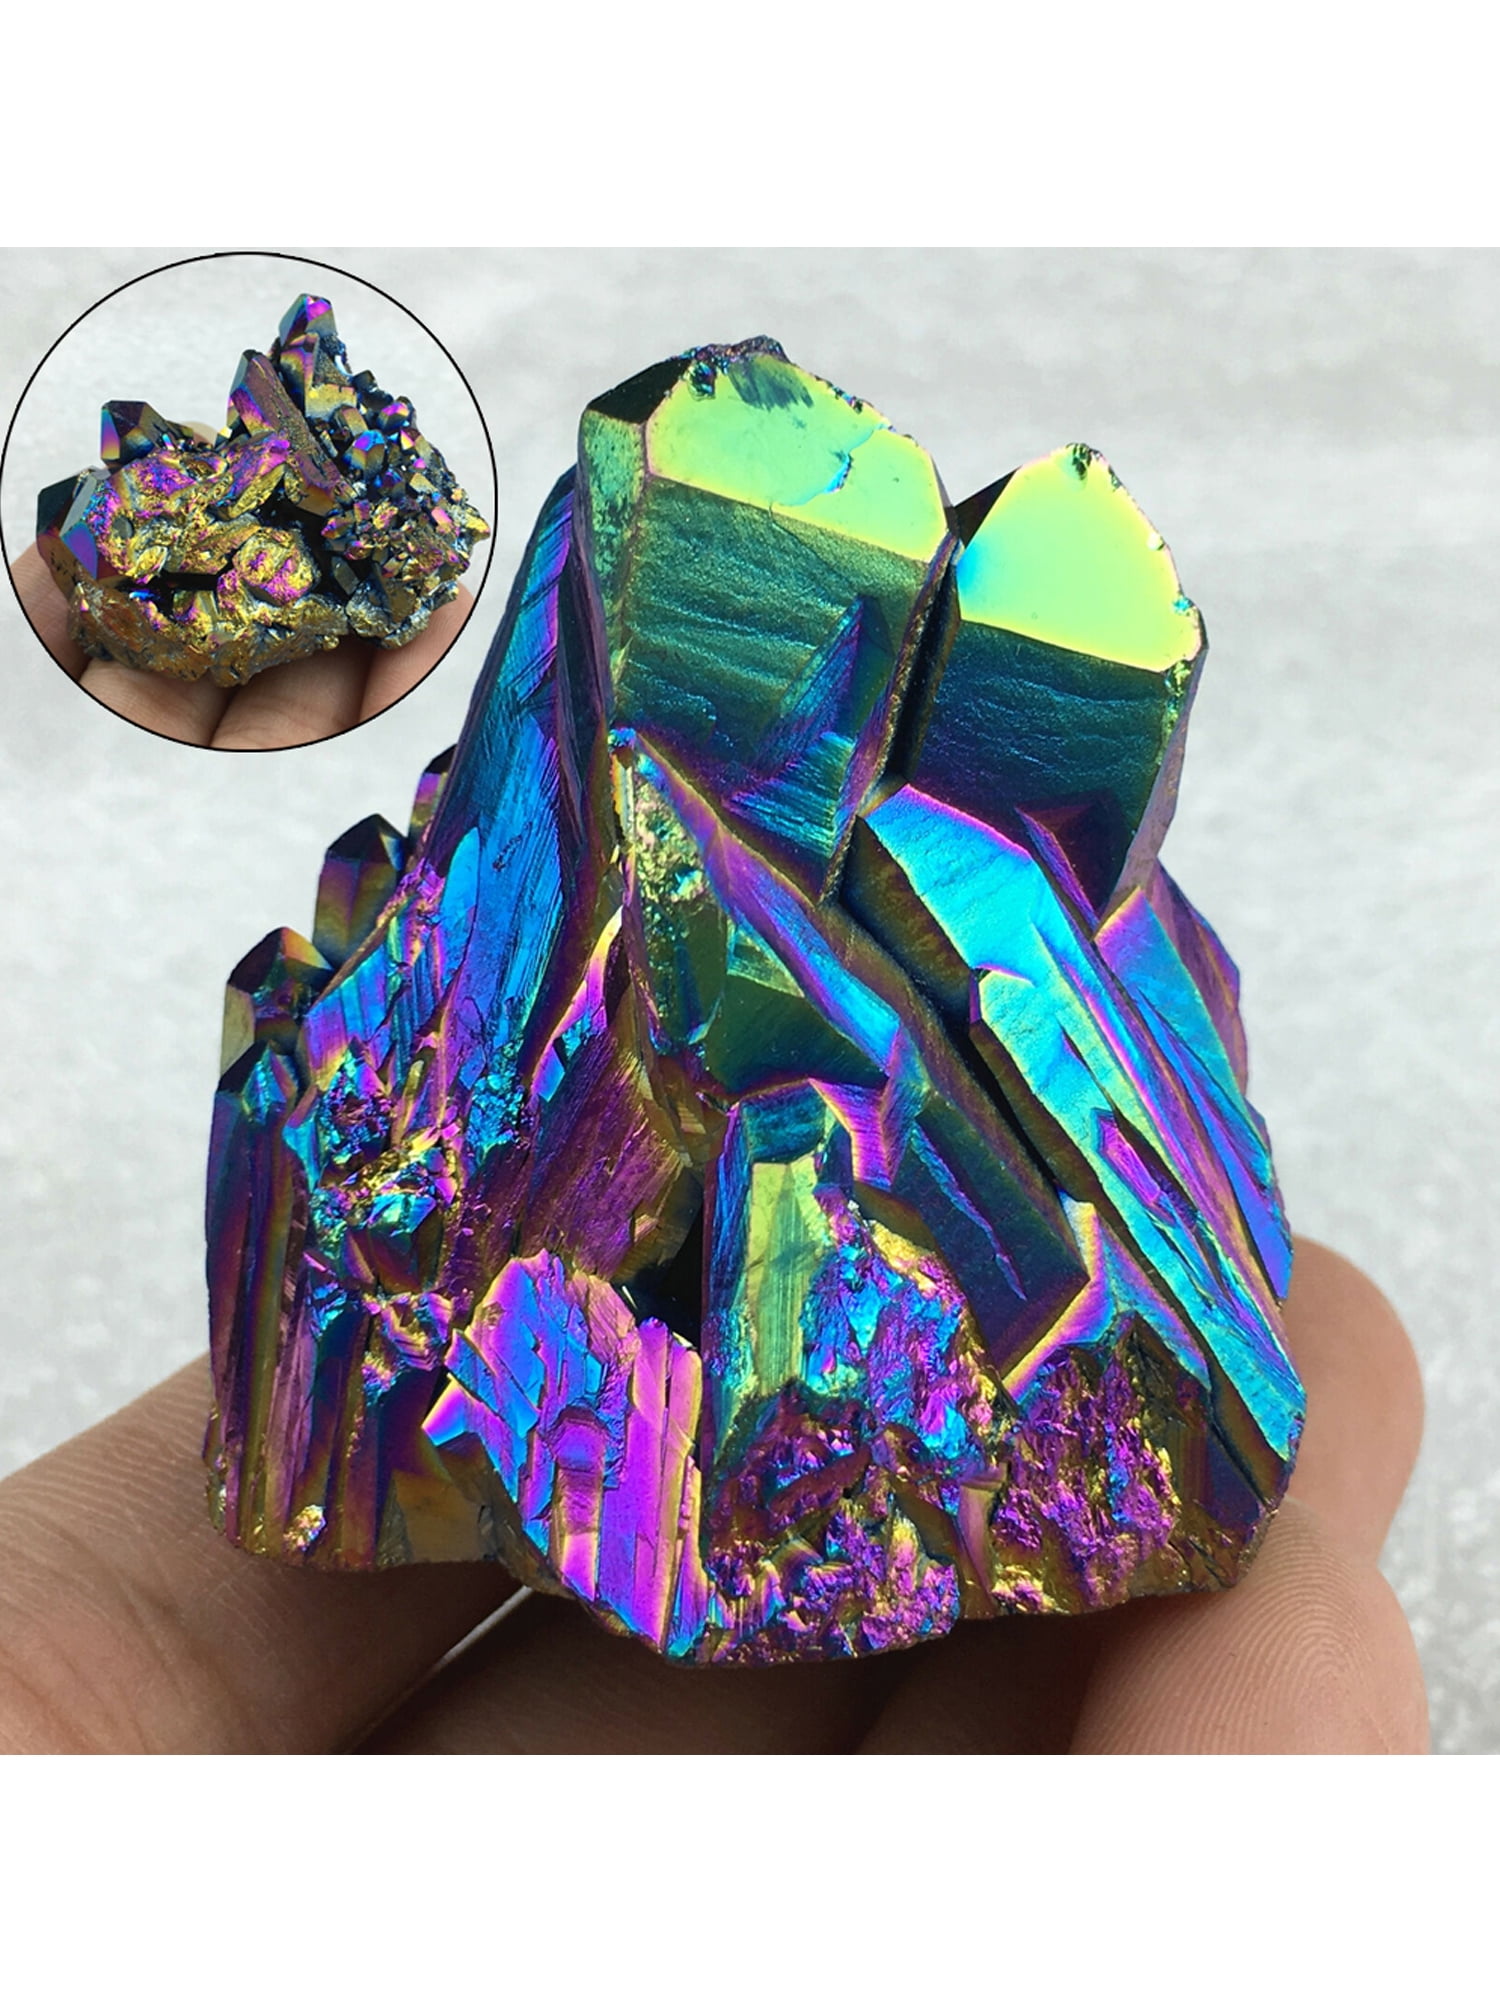 Natural Quartz Crystal Rainbow Titanium Cluster Mineral Specimen Healing Stone, 